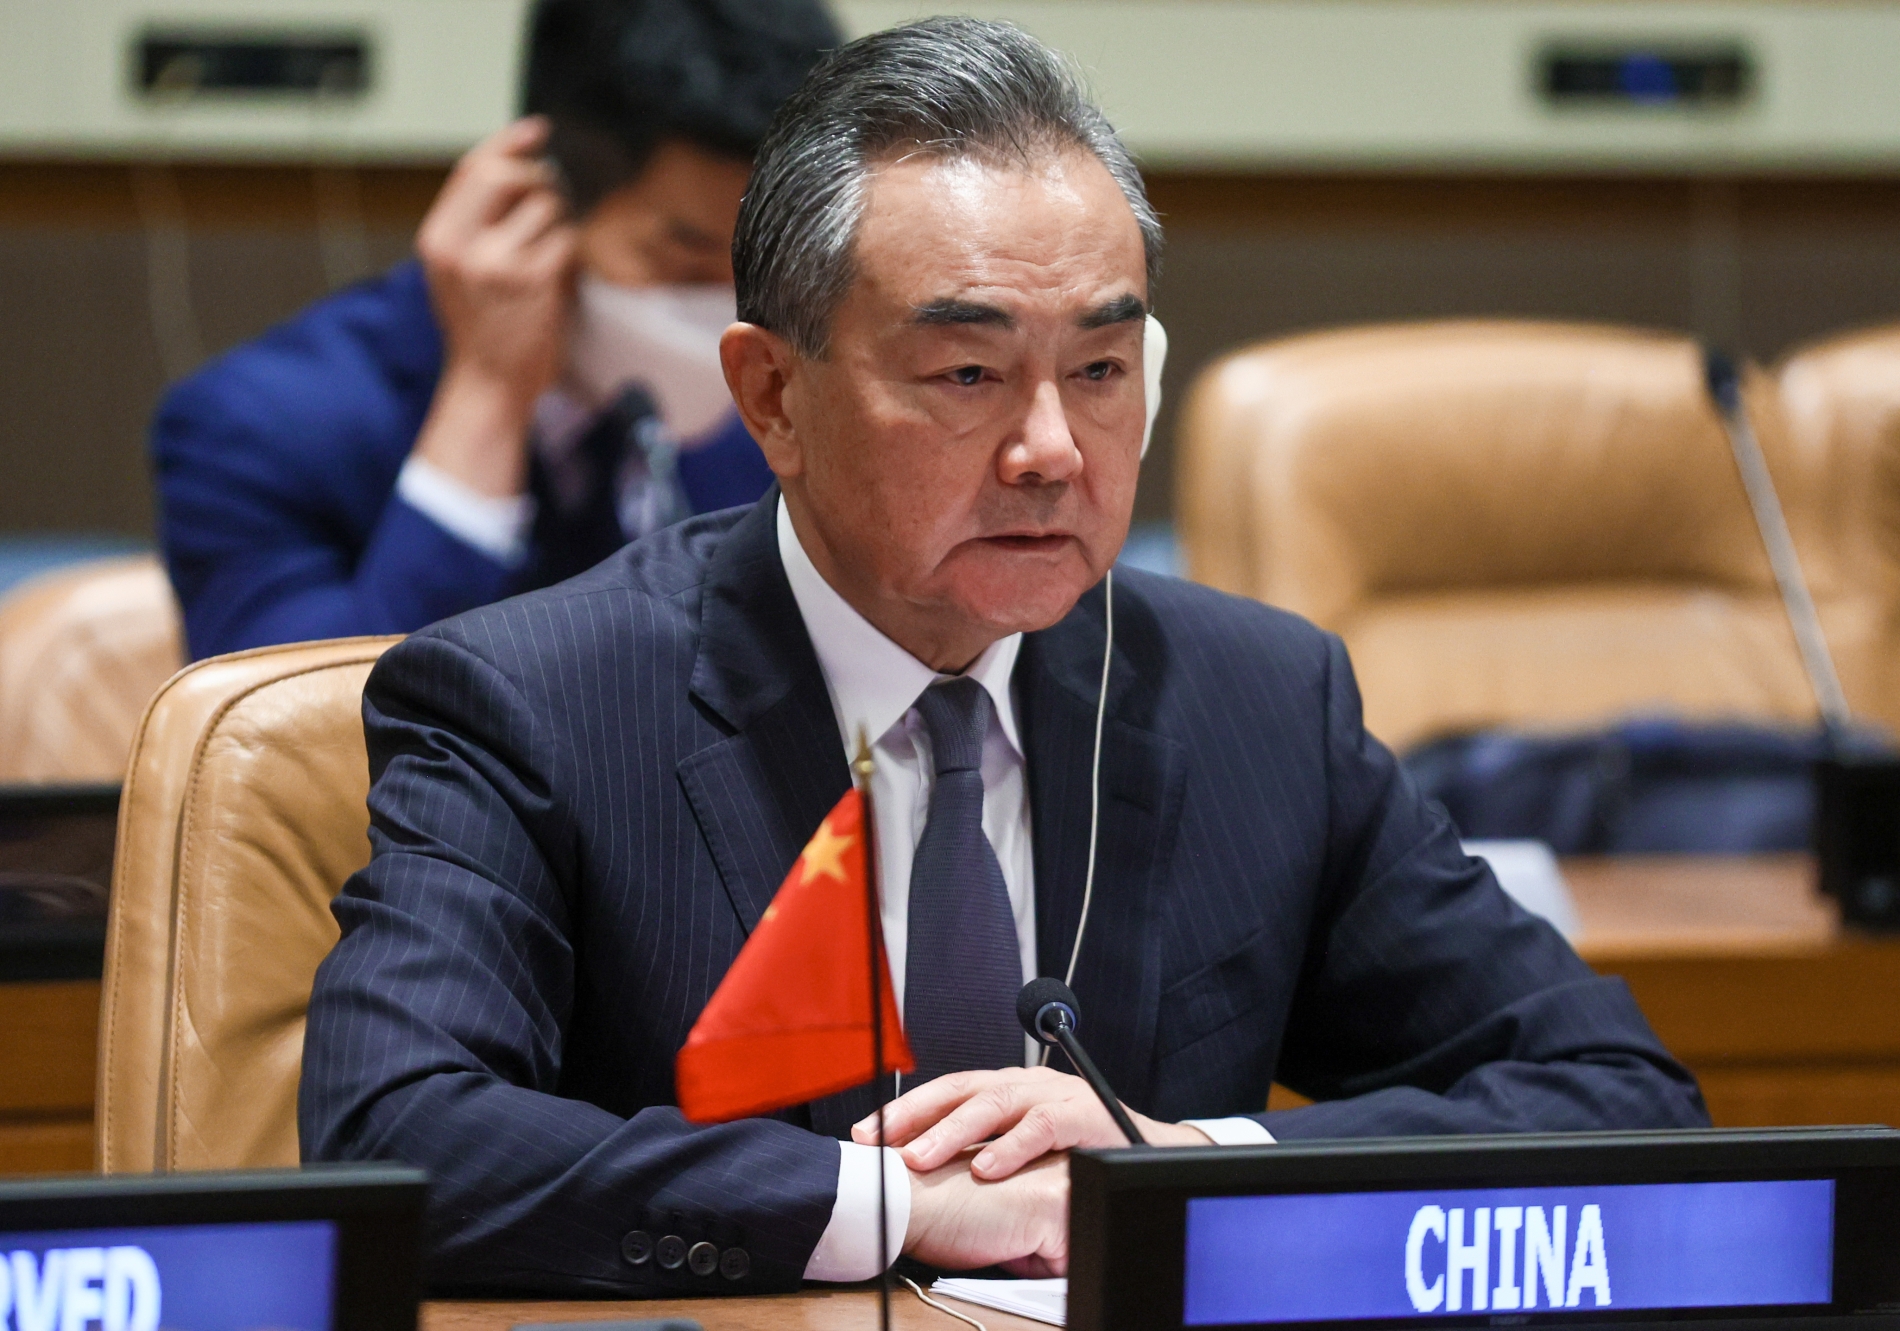  КНР проведет заседание Совбеза ООН по палестино-израильскому вопросу